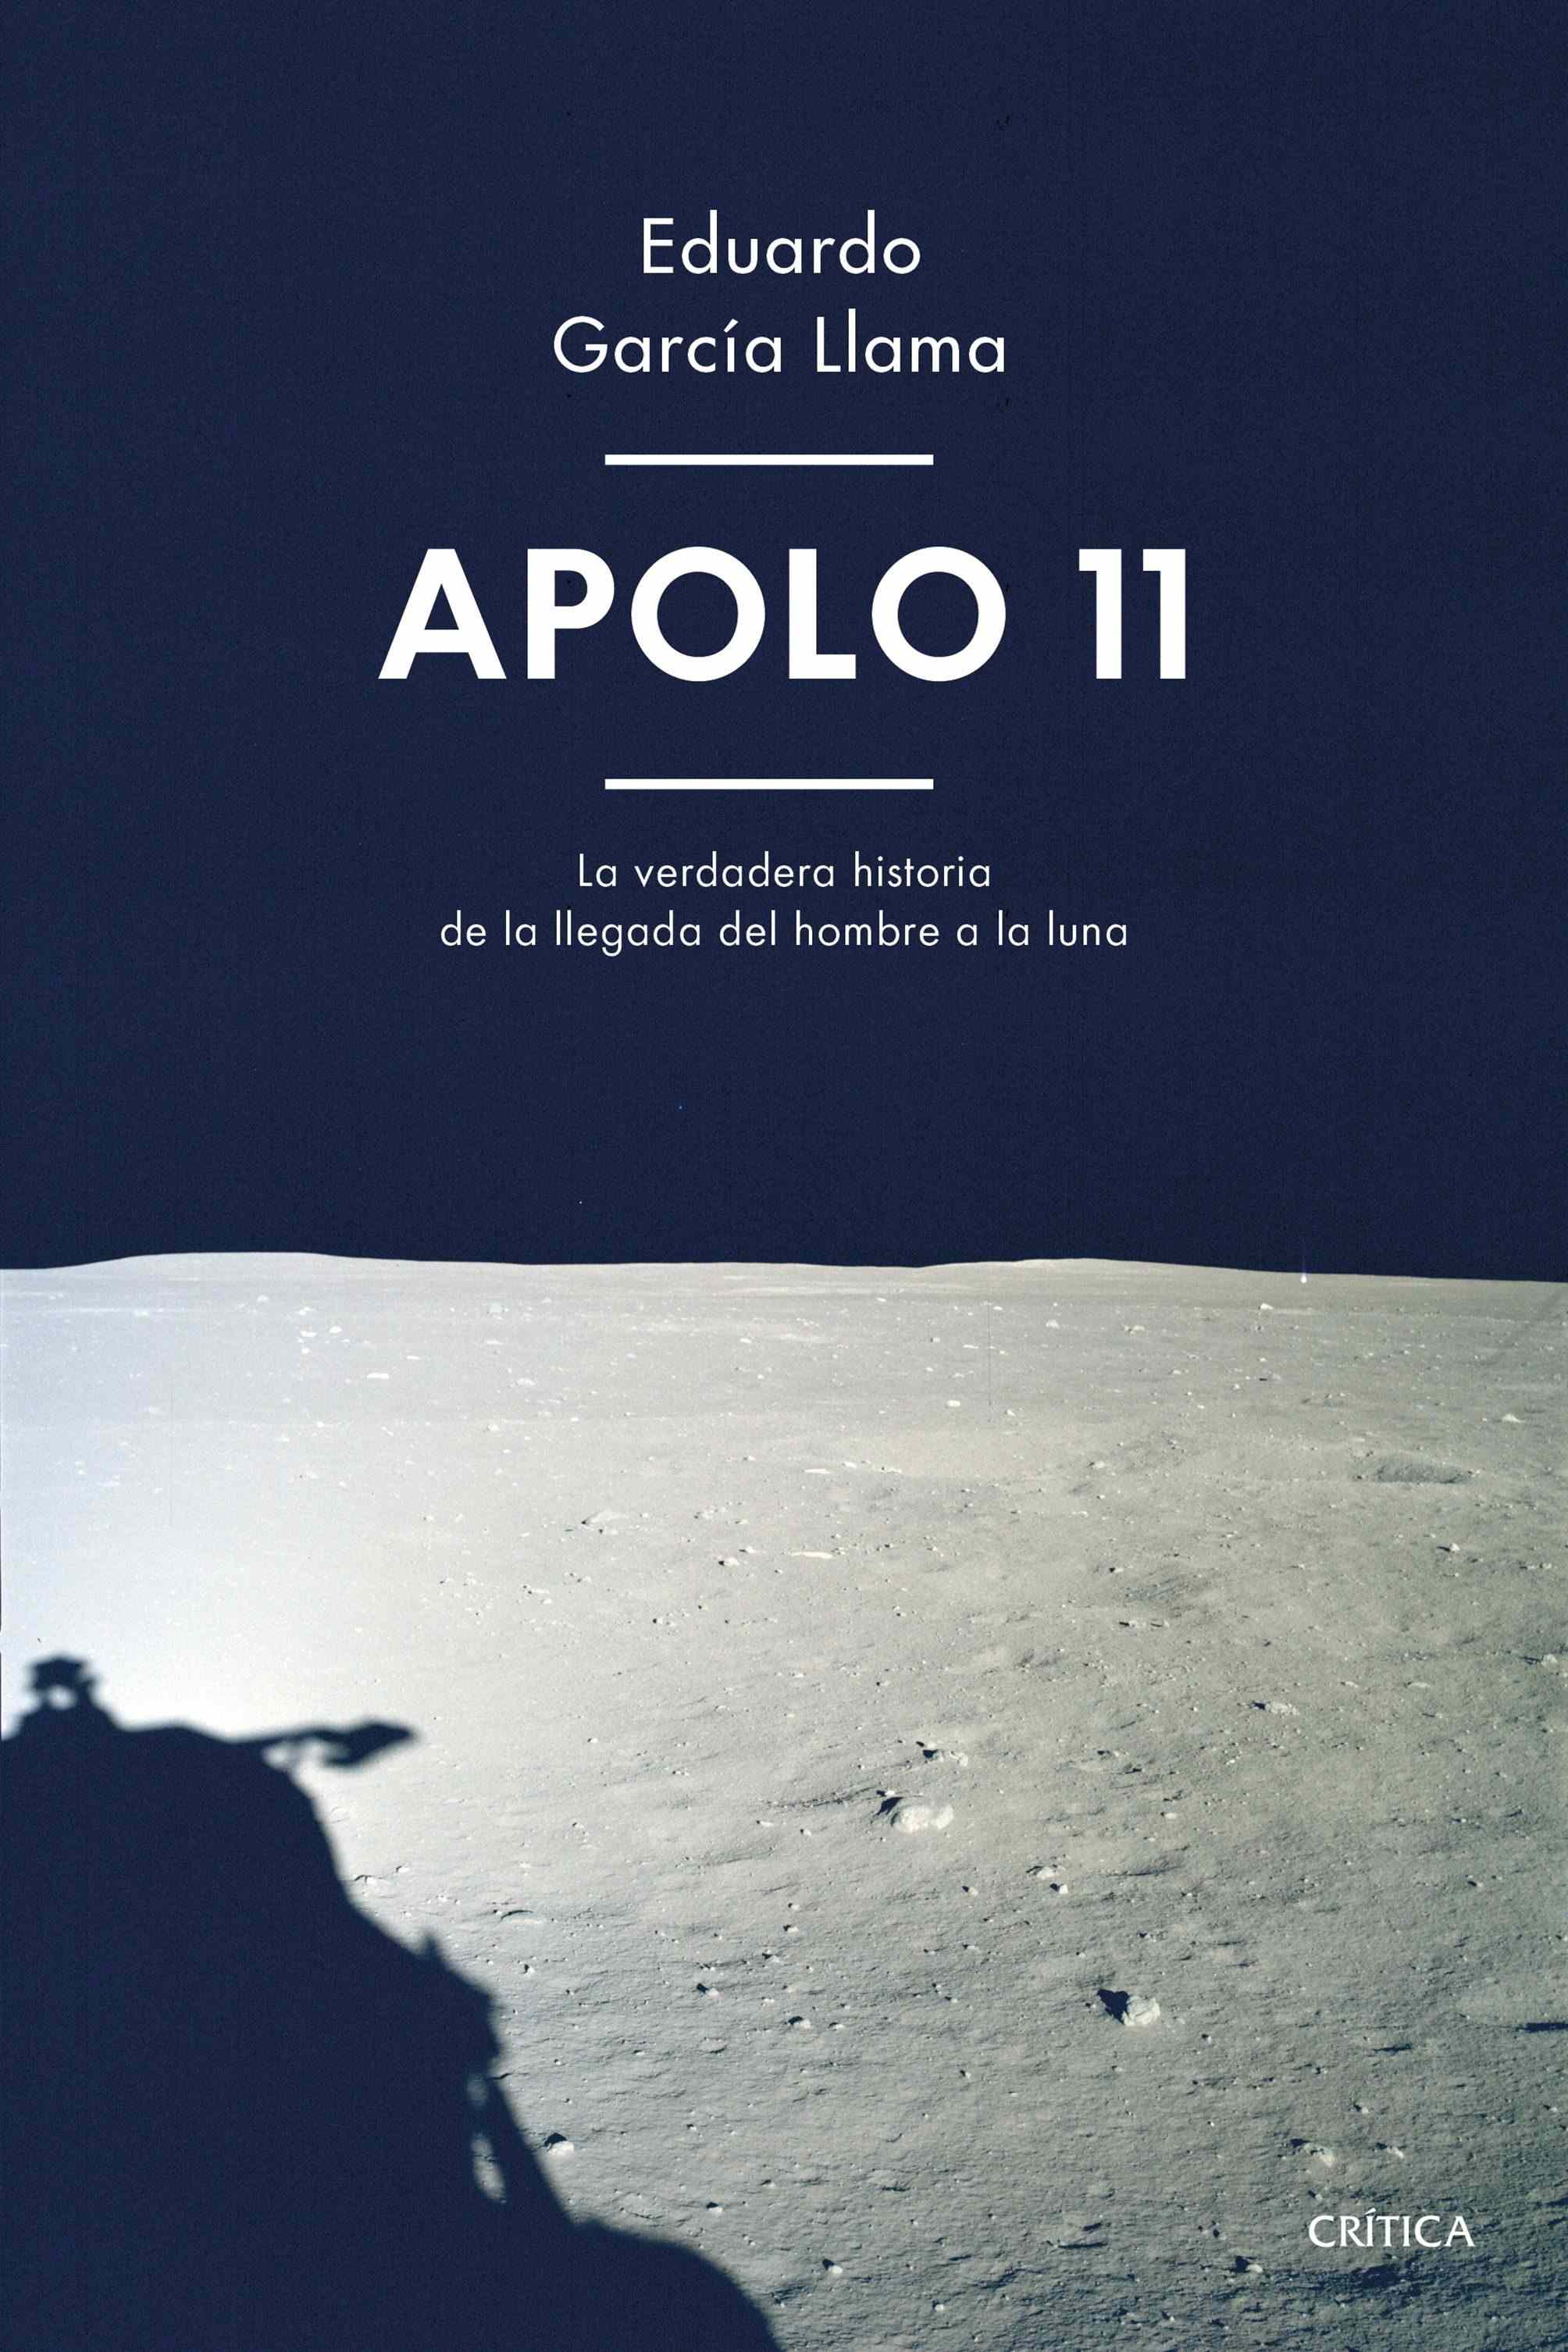 Portada de APOLO 11. La apasionante historia de cómo el hombre pisó la Luna por primera vez